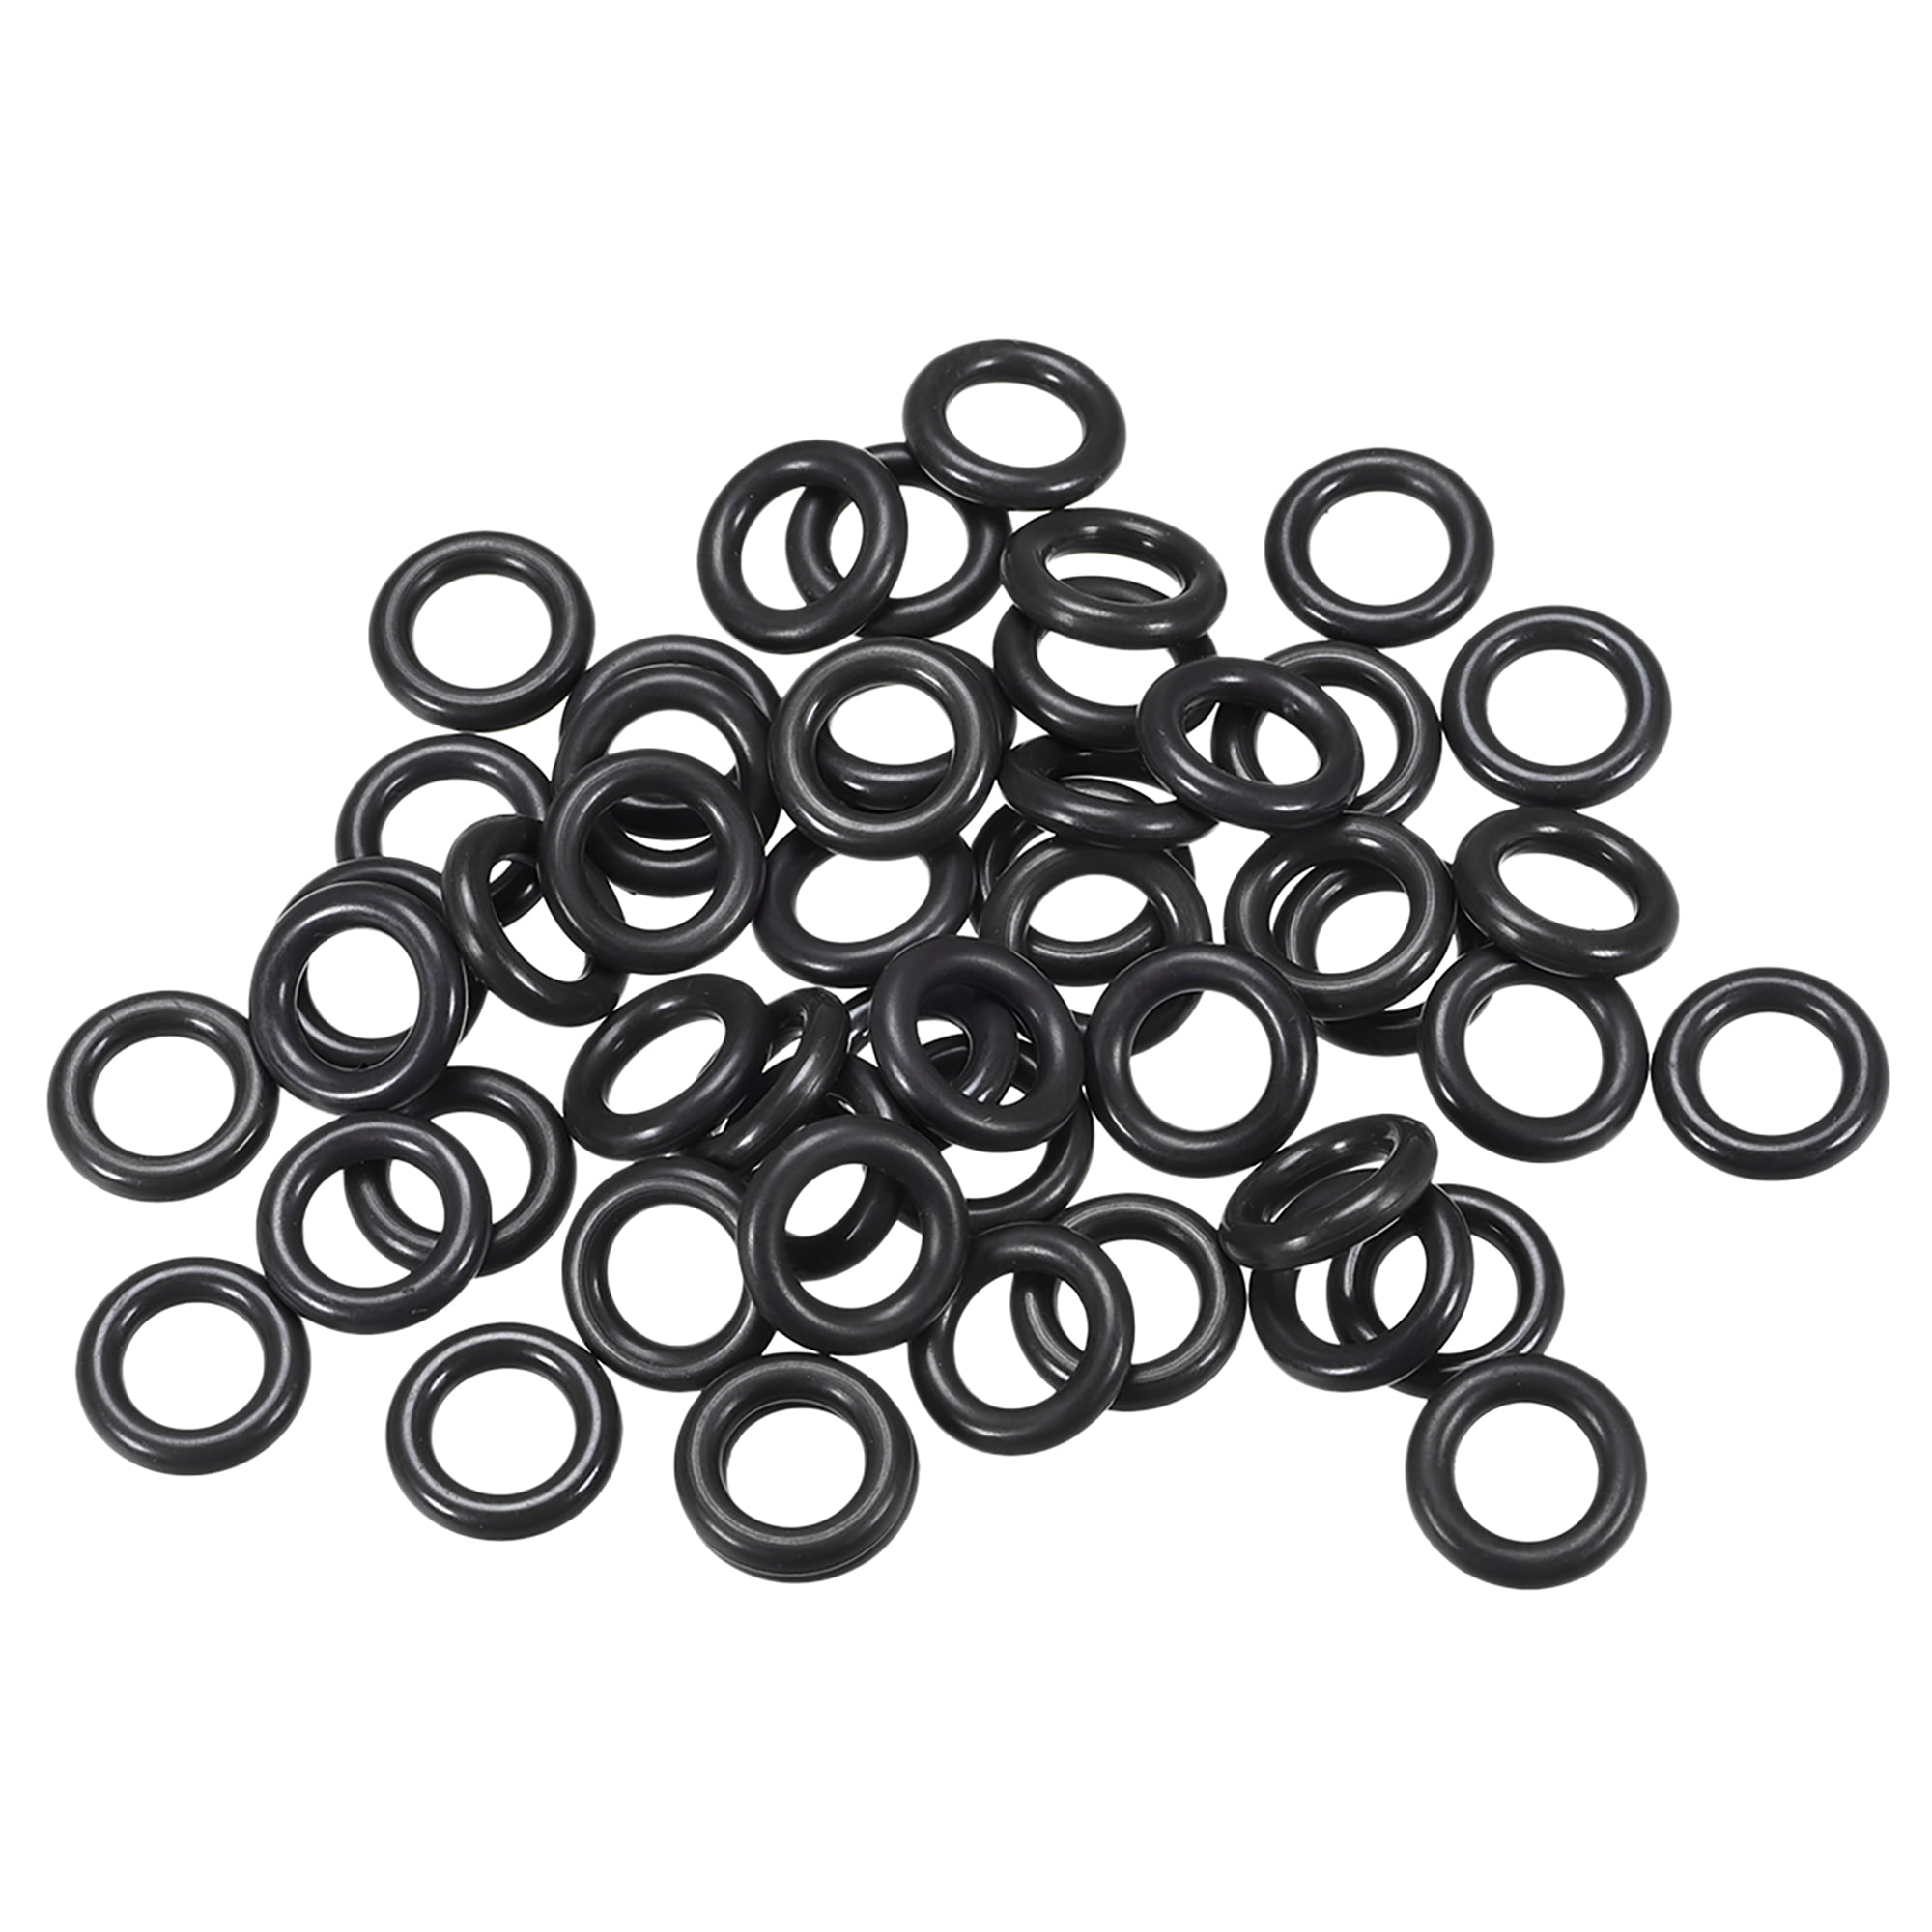 Univen Rubber O-Ring Gasket 13281207/BL5000-08/1000000013 Fits Black & Decker Blenders